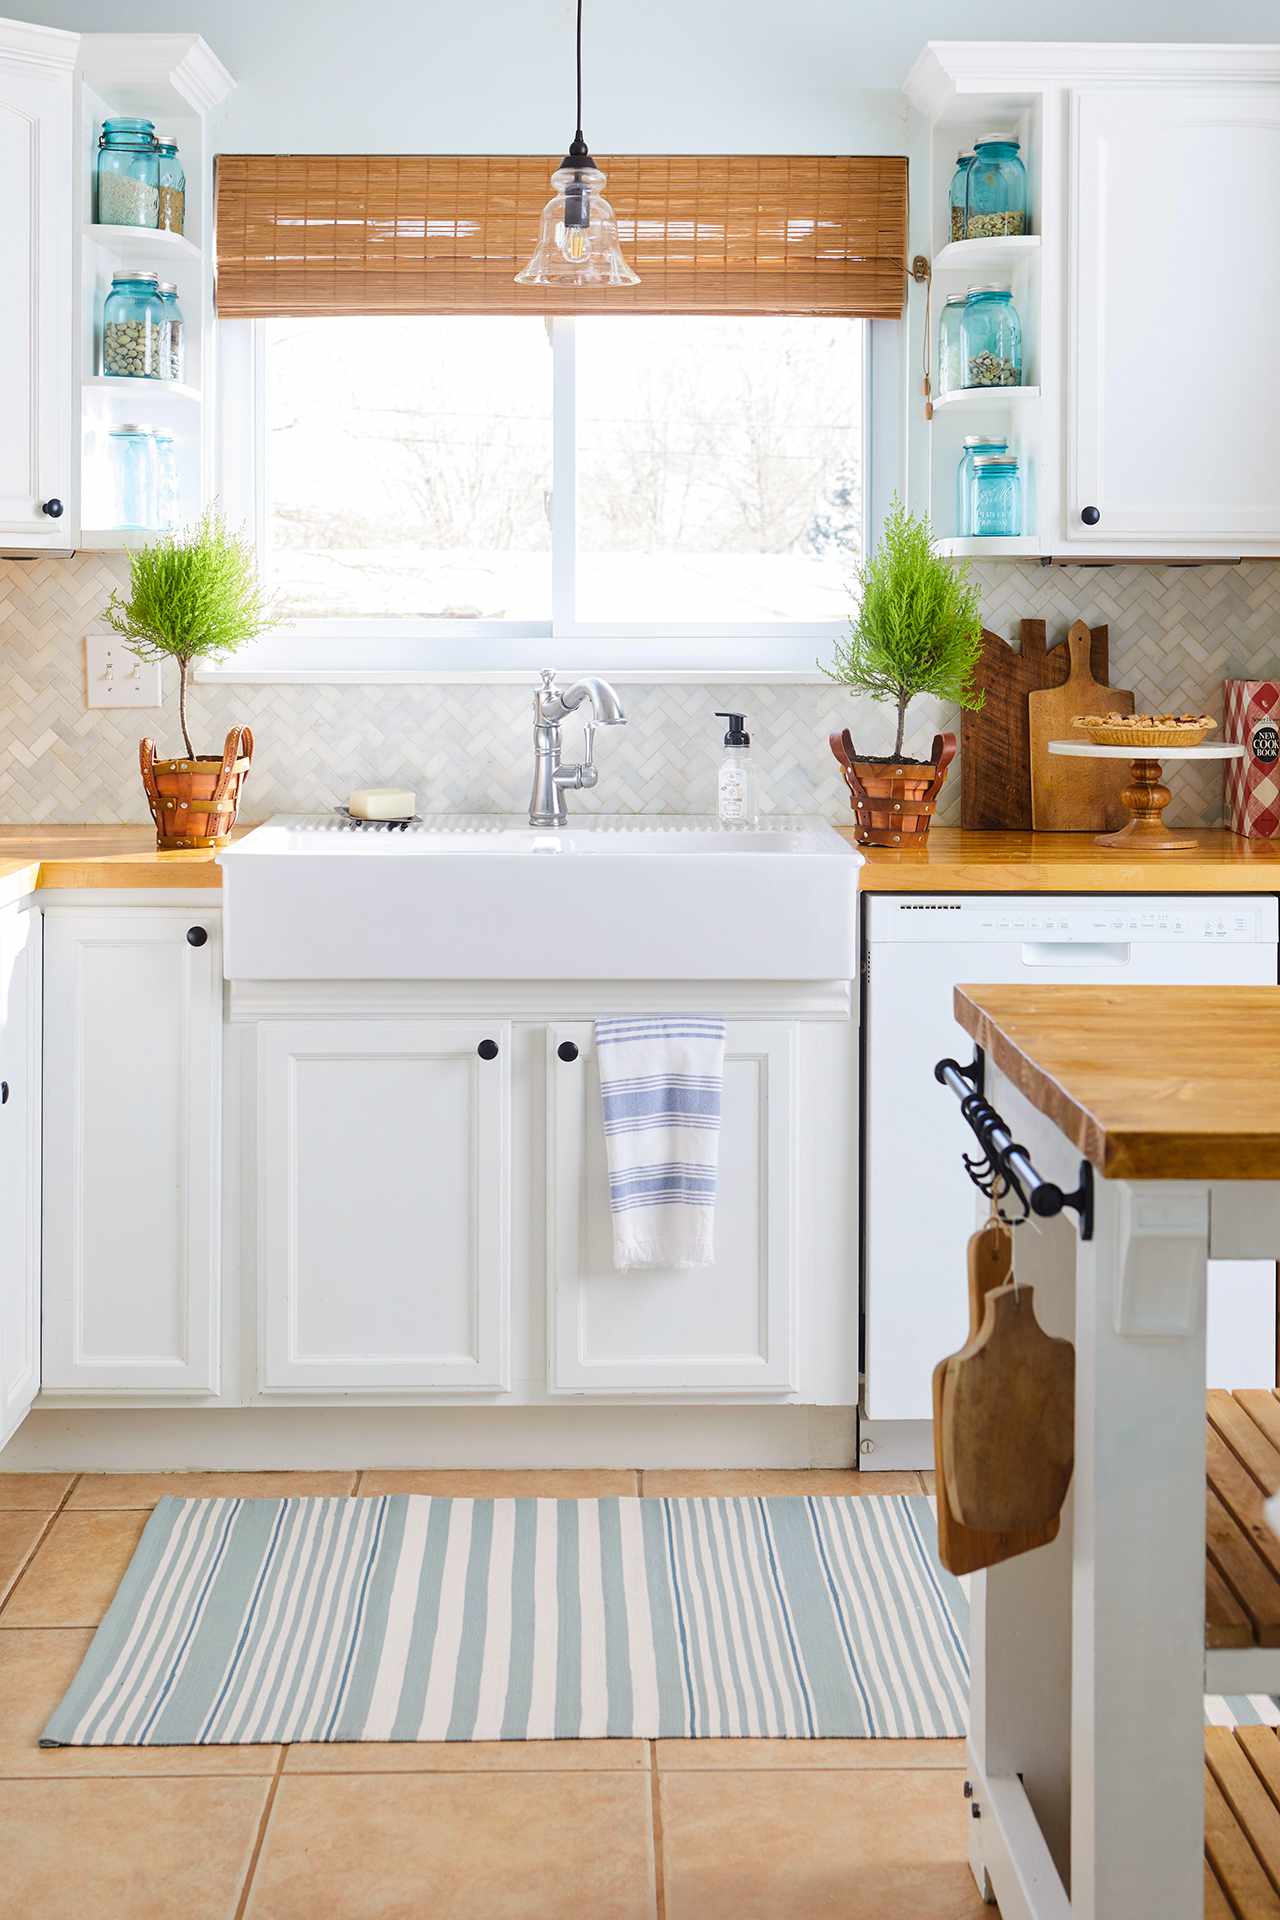 budget kitchen remodeling: kitchens under $2,000 | better